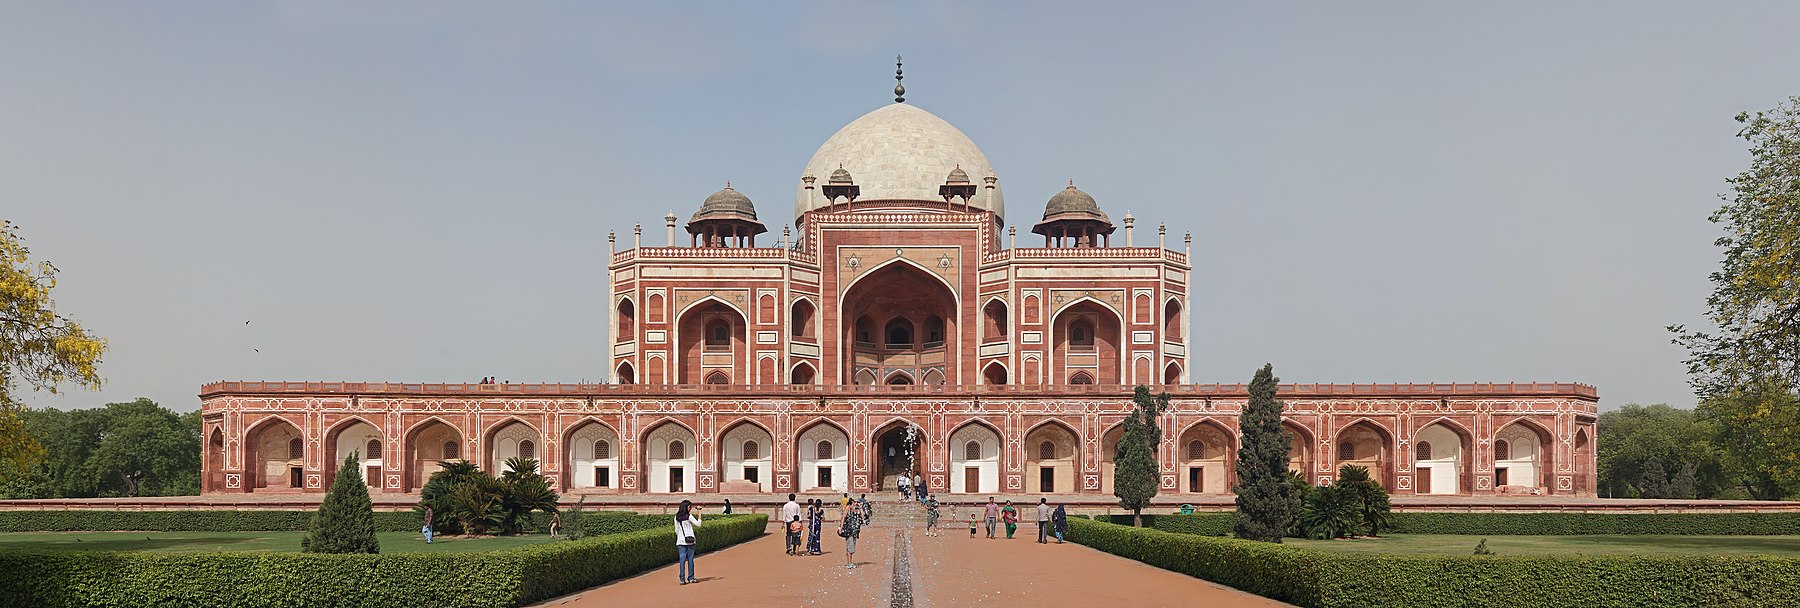 हुमायूँ का मकबरा, दिल्ली.jpg